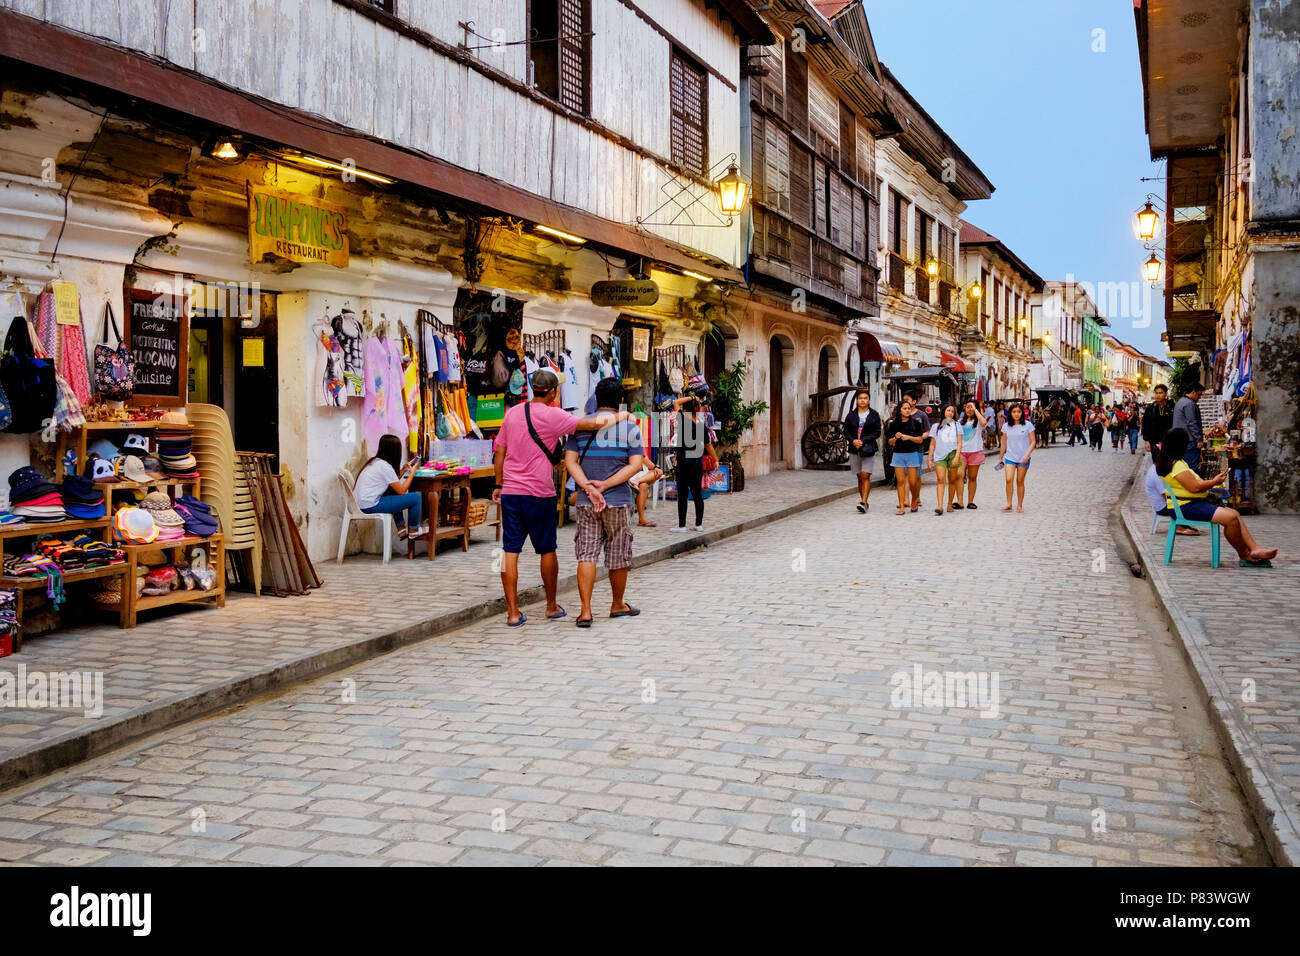 La pittoresque ville coloniale espagnole du 16ème siècle de Vigan aux Philippines avec ses rues pavées Banque D'Images